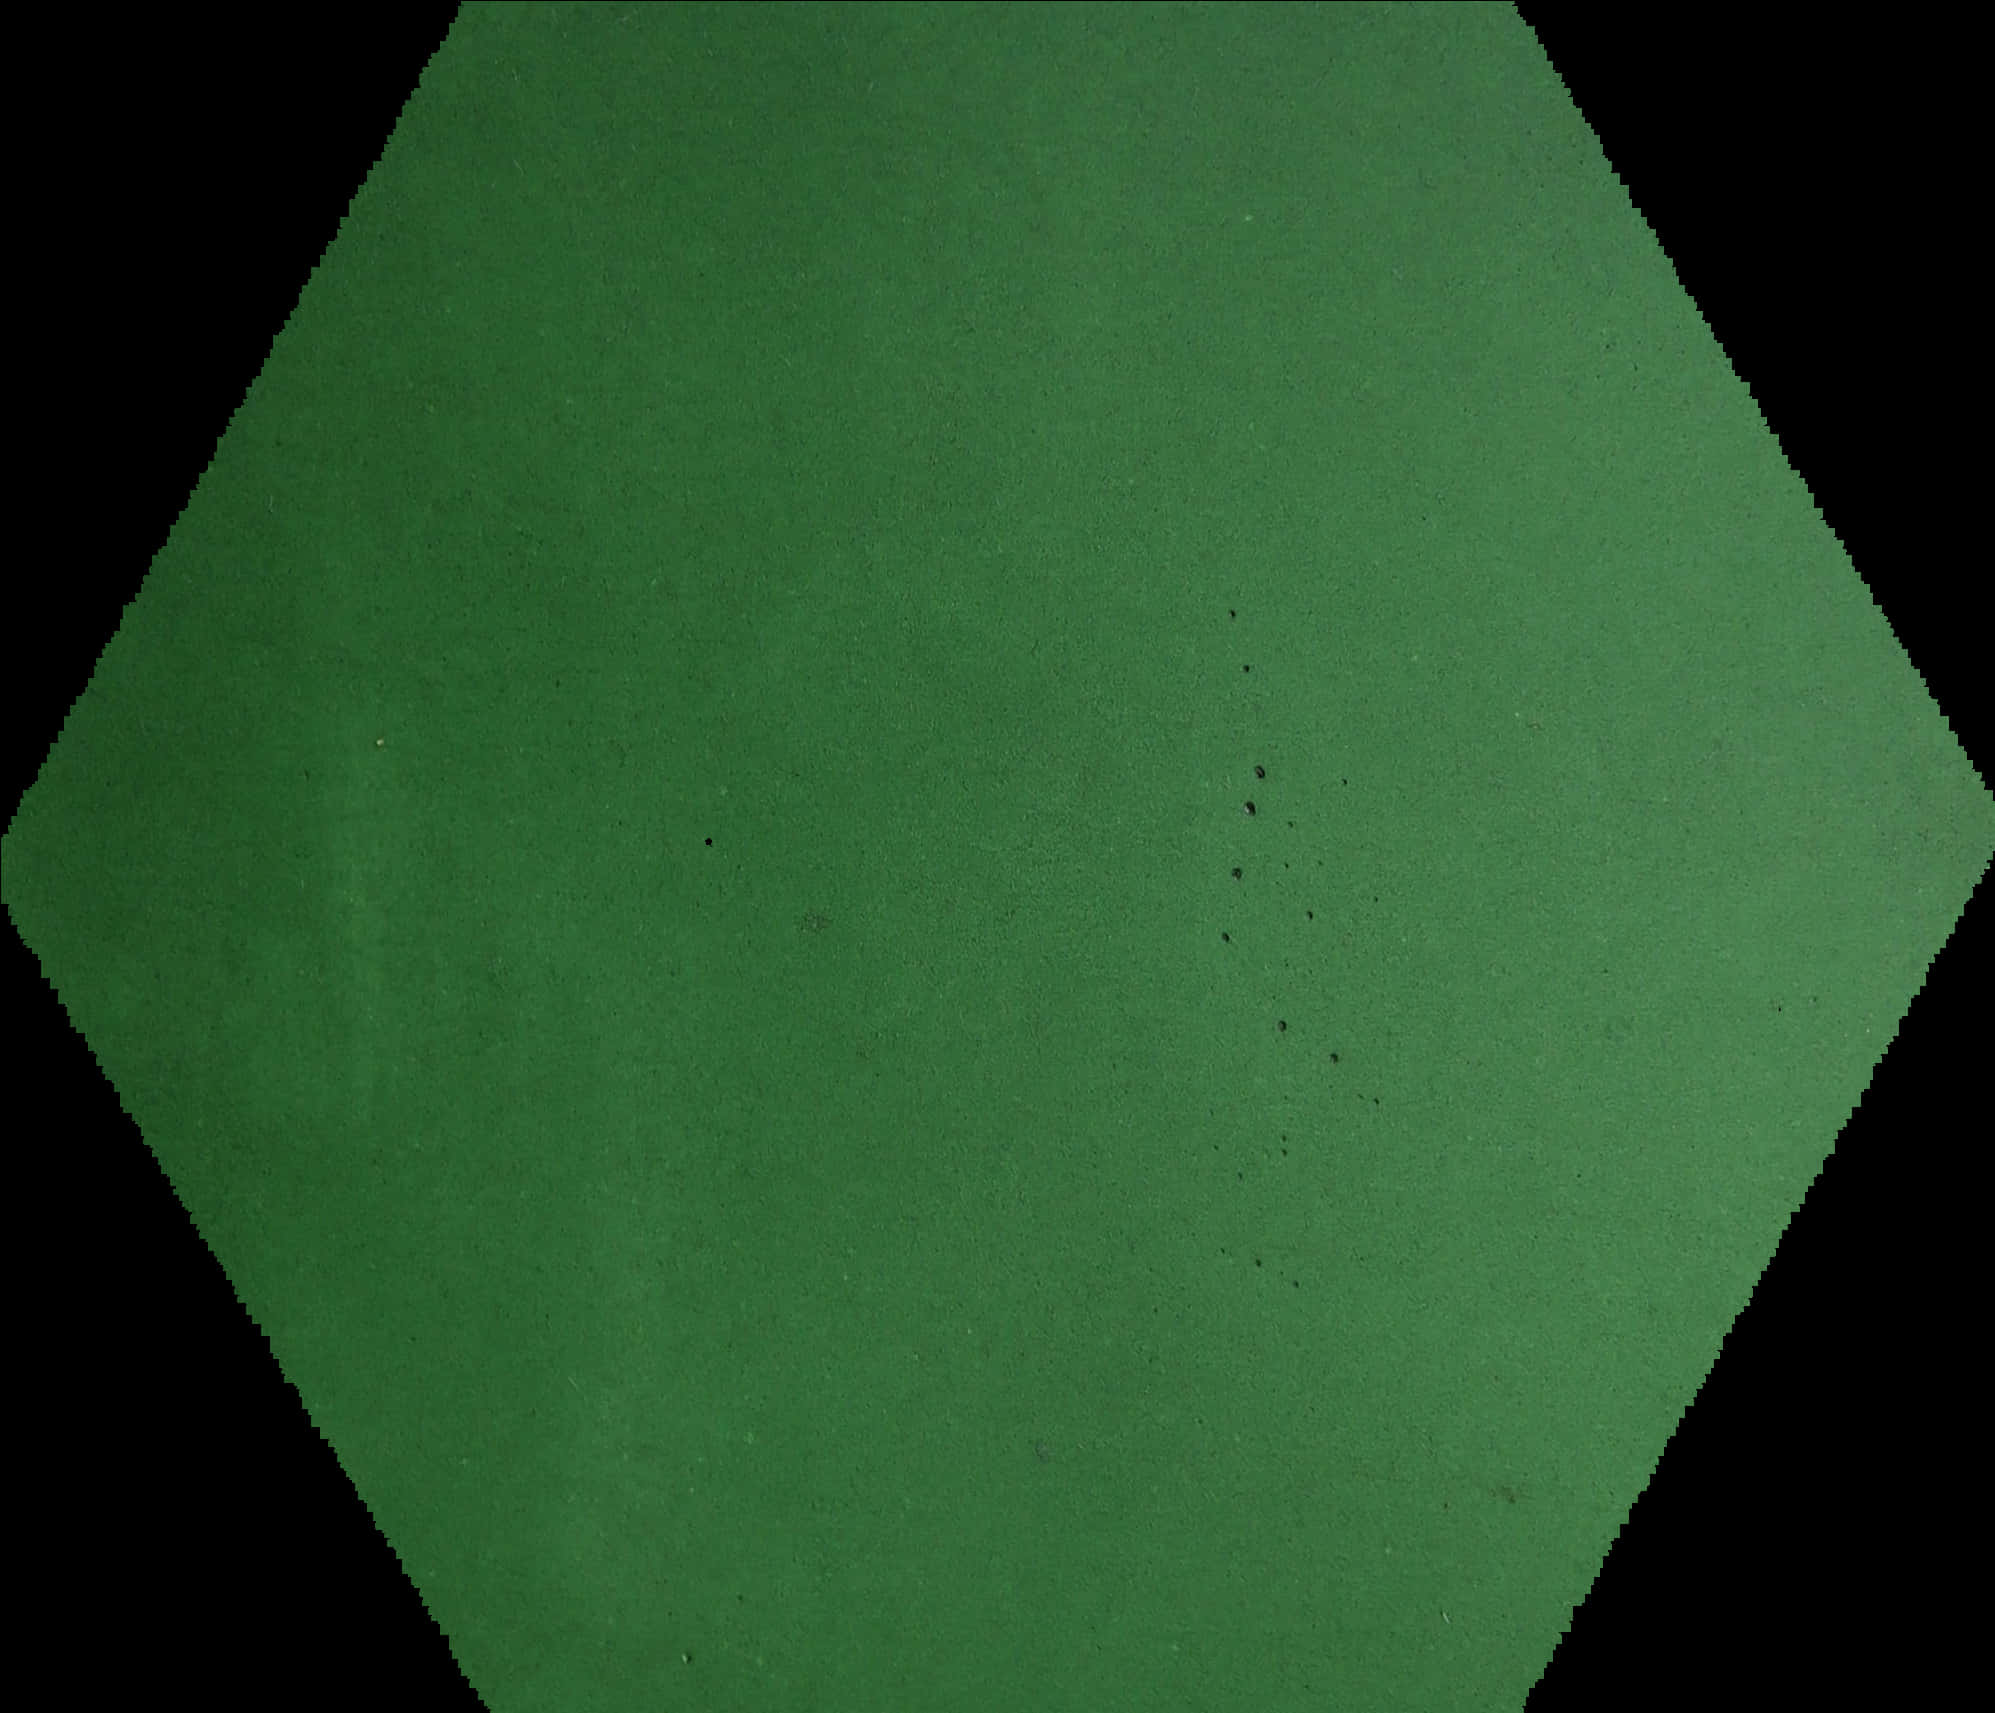 A Green Hexagon With Black Border